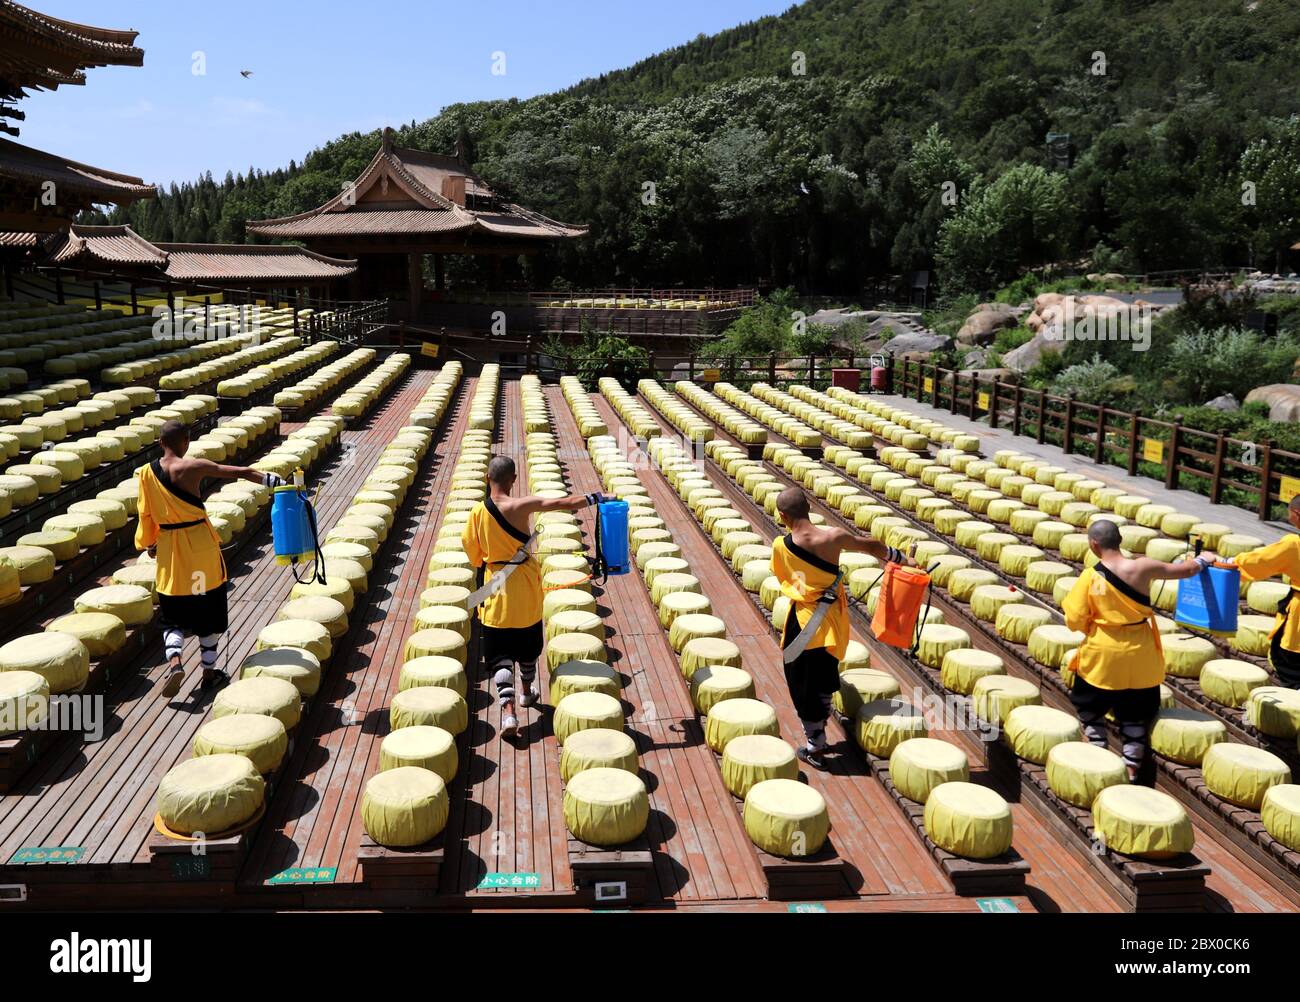 Dengfeng, Dengfeng, Cina. 4 Giugno 2020. HenanÃ¯Â¼Å'CHINA-il 3 giugno, shaolin Tempio si trova a Dengfeng, provincia di Henan, dove il Tempio Shaolin è di riprendere il lavoro. Il ragazzo shaolin, con gli spruzzatori a mano fra le braccia, vola sul muro per pulire il palcoscenico e la tribuna. Shaolin bambini ha detto, portando gli spruzzatori per uccidere, come la pratica usuale di Shaolin secchio gong, uccidendo rigorosi requisiti delle loro braccia si allungano fuori senza piegarsi, uccidere pratica due. Credit: SIPA Asia/ZUMA Wire/Alamy Live News Foto Stock